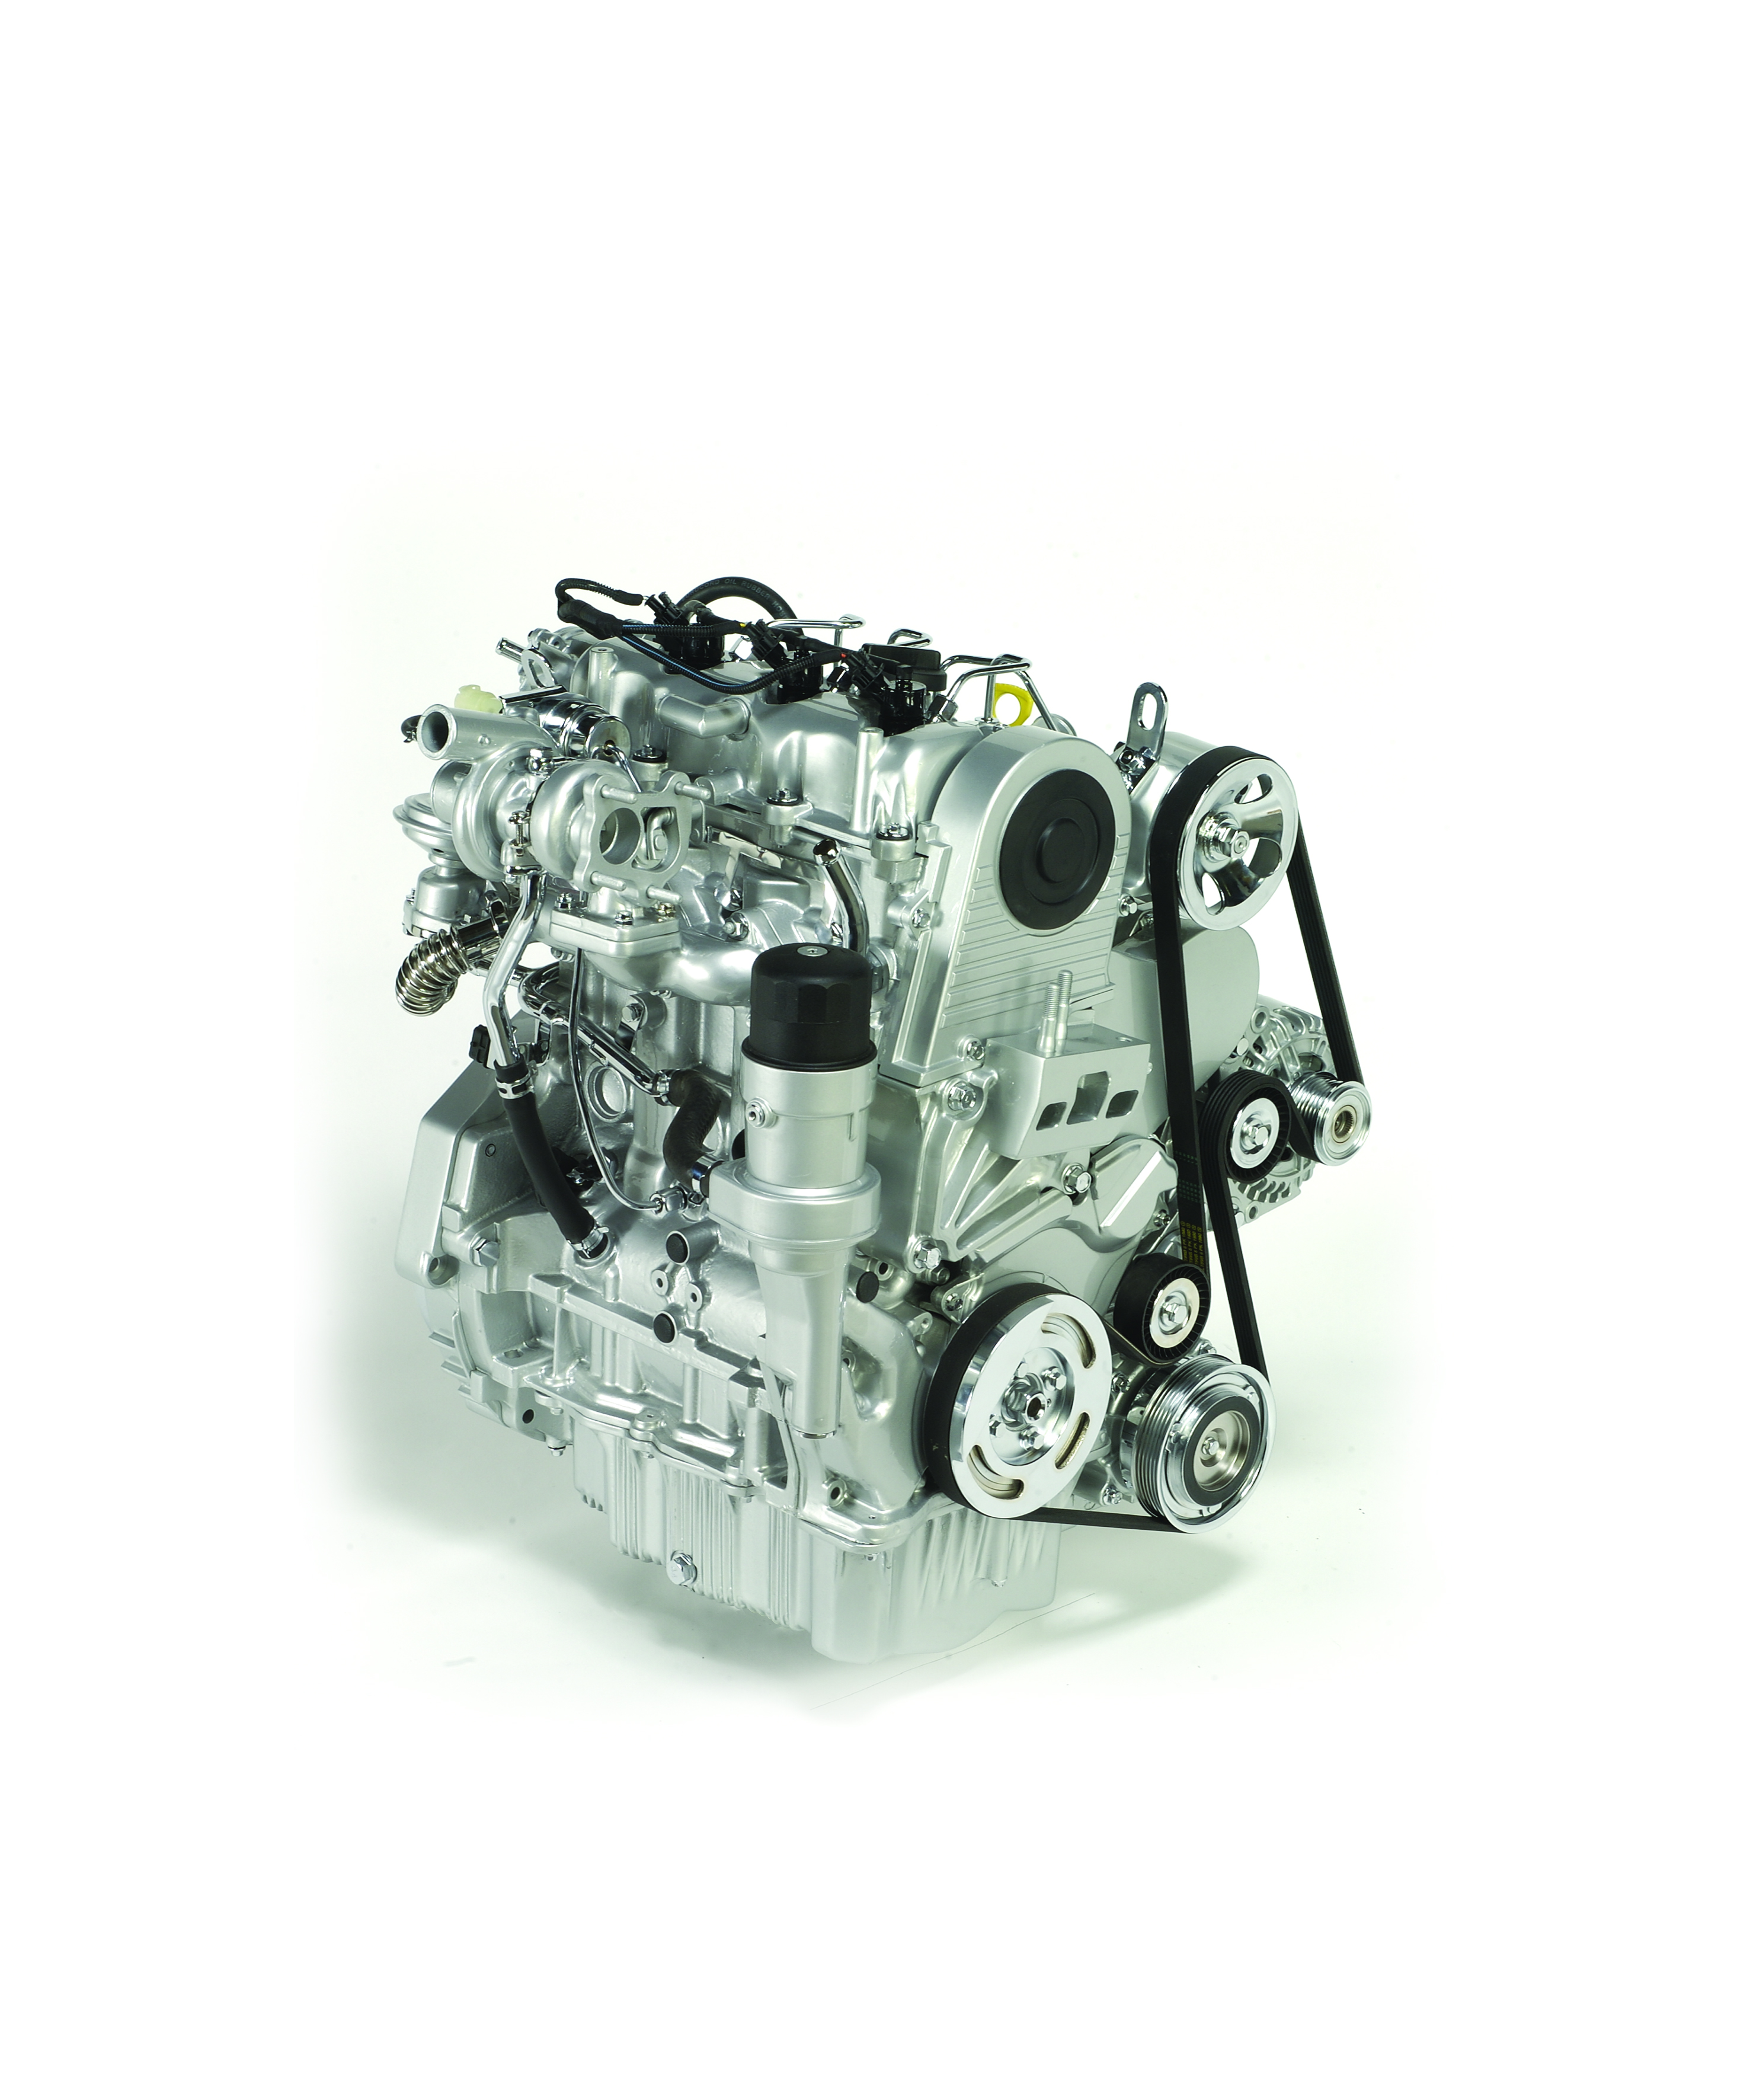 华泰汽车将投产vm公司清洁型柴油发动机